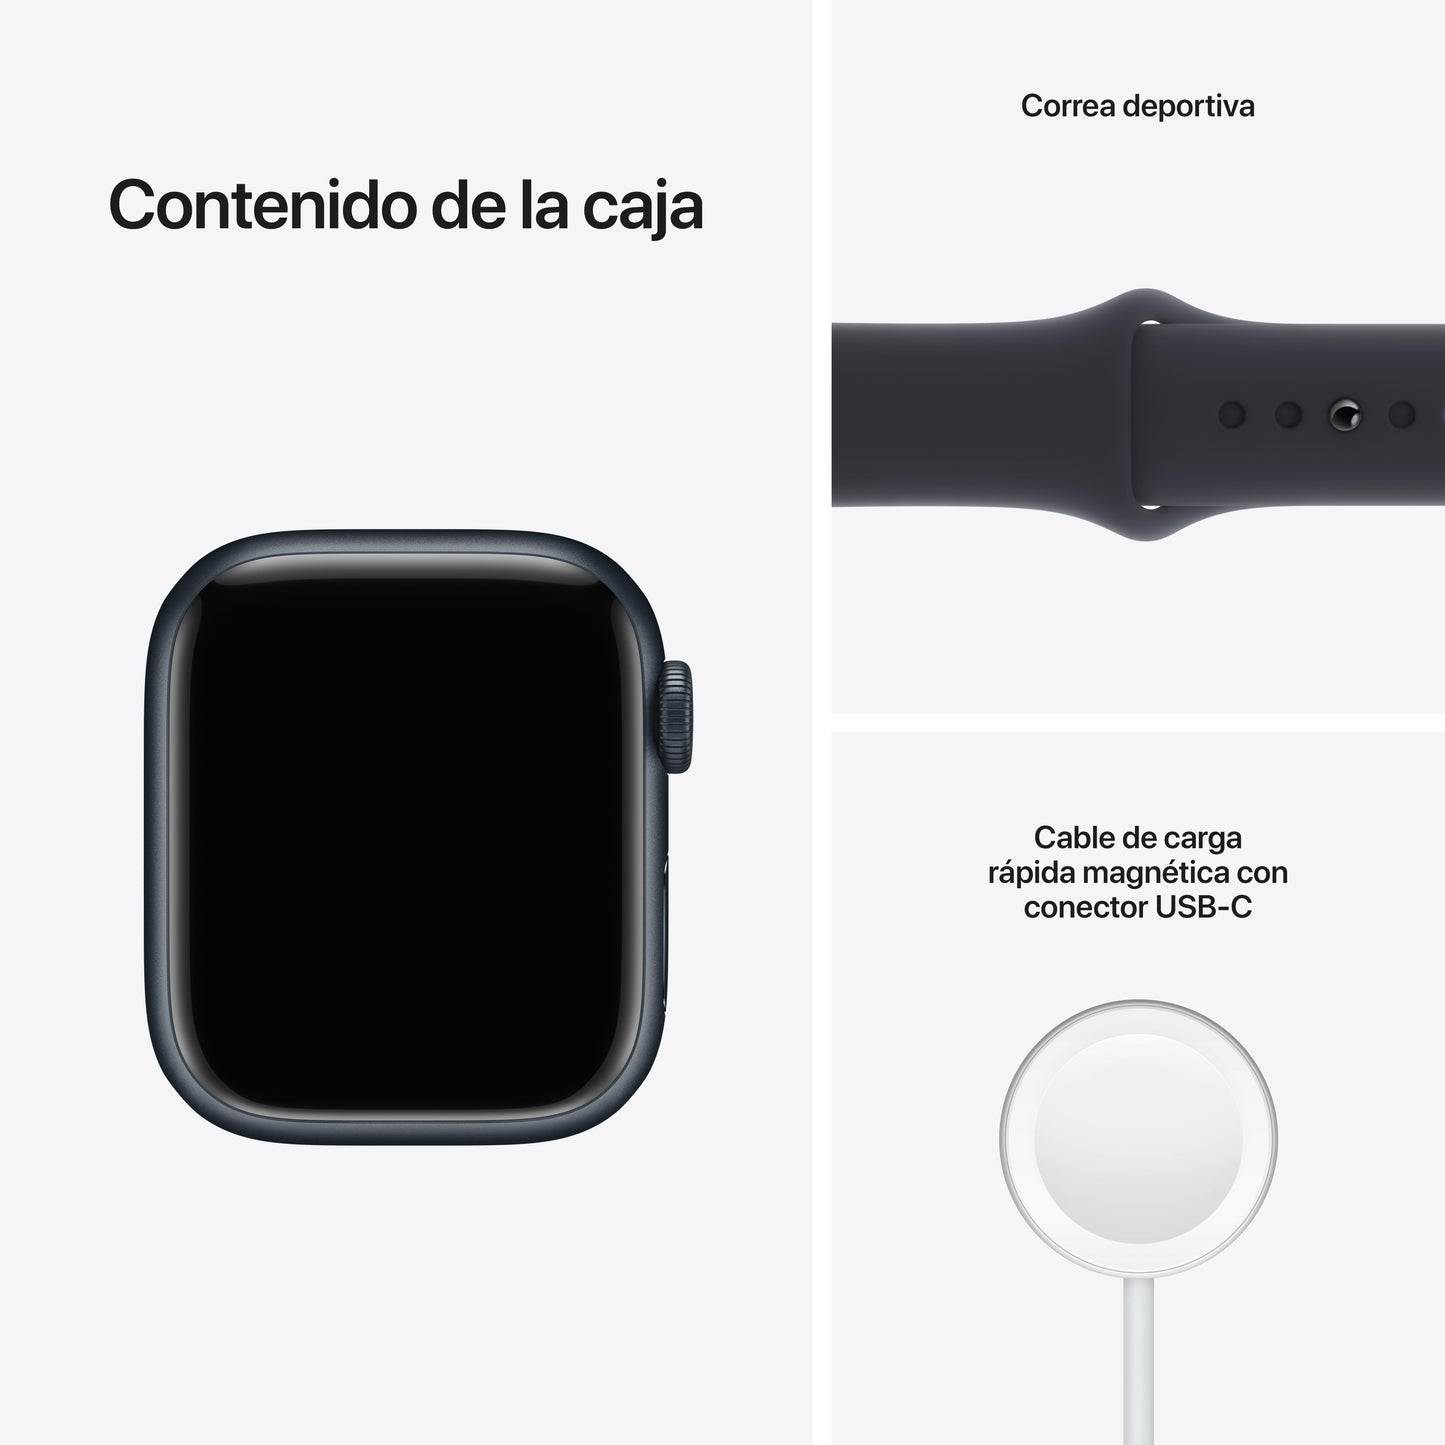 Apple Watch Series 7 (GPS) - Caja de aluminio en color medianoche de 41 mm - Correa deportiva en color medianoche - Talla única